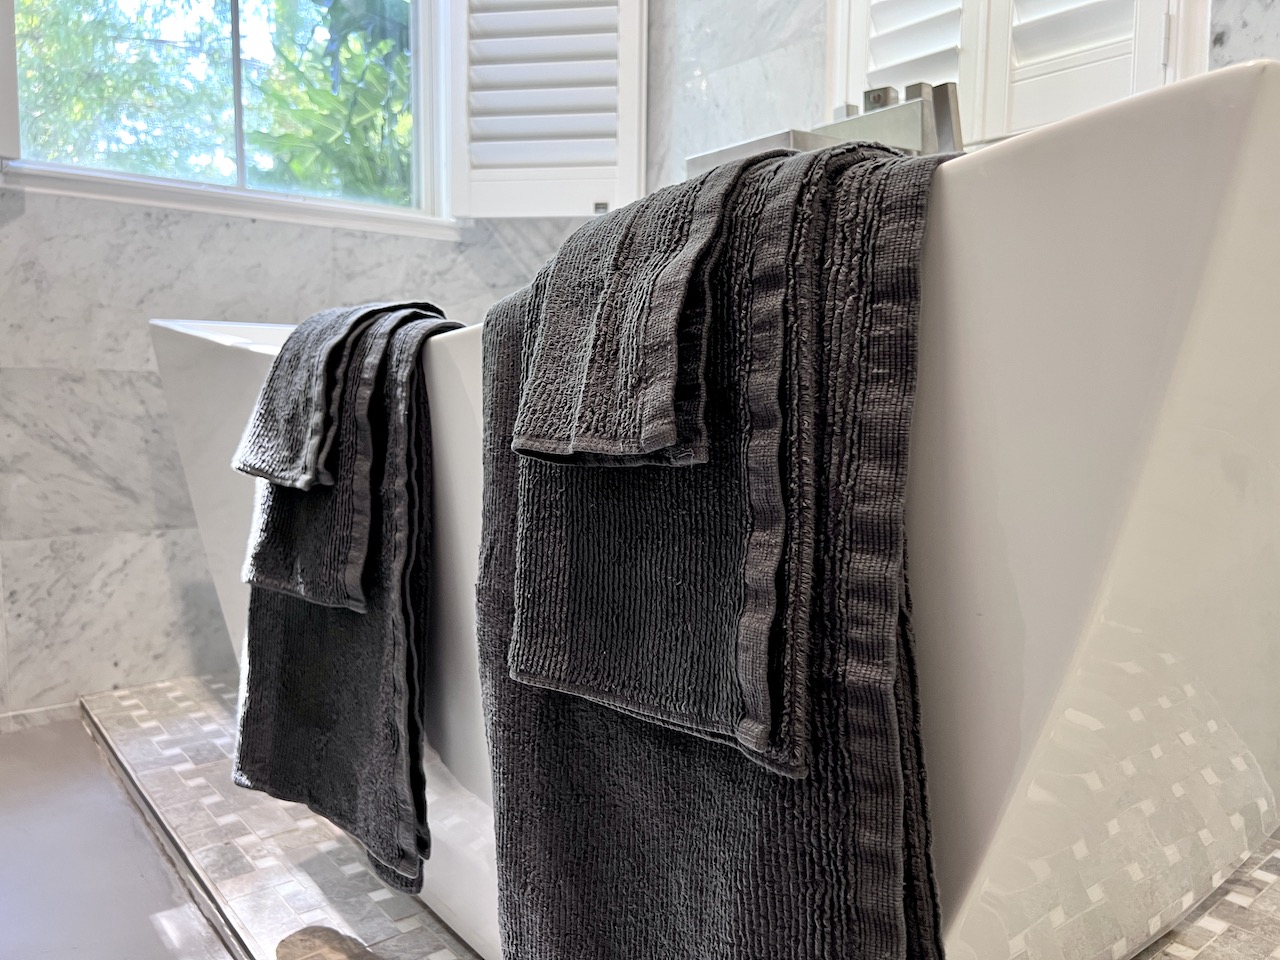 Sunday Citizen Cascais Towels Review - Softest Bath Towels | Non Biased Reviews